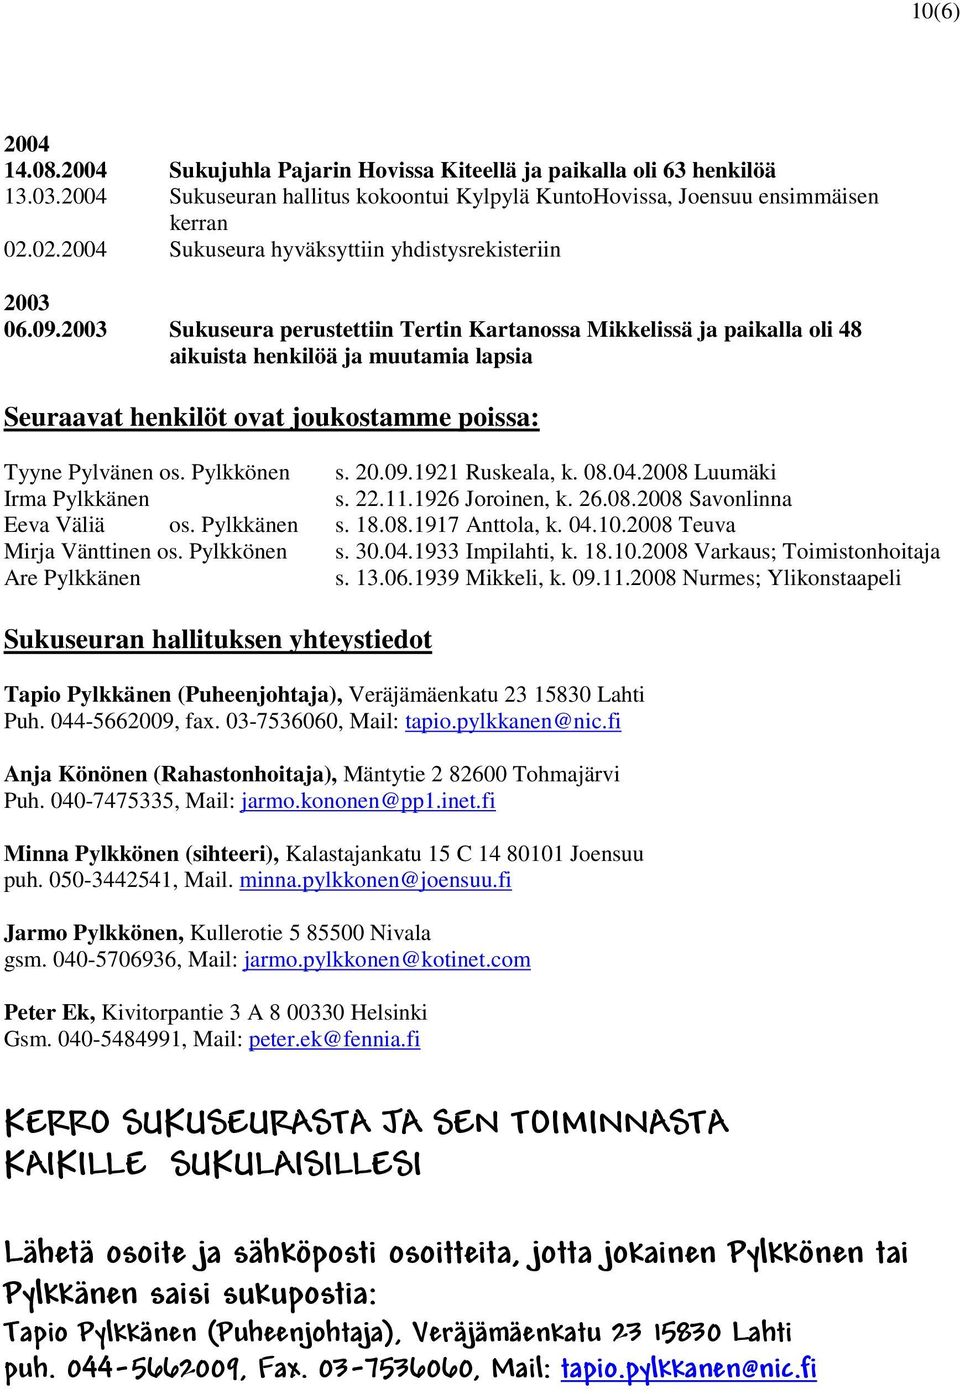 2003 Sukuseura perustettiin Tertin Kartanossa Mikkelissä ja paikalla oli 48 aikuista henkilöä ja muutamia lapsia Seuraavat henkilöt ovat joukostamme poissa: Tyyne Pylvänen os. Pylkkönen s. 20.09.